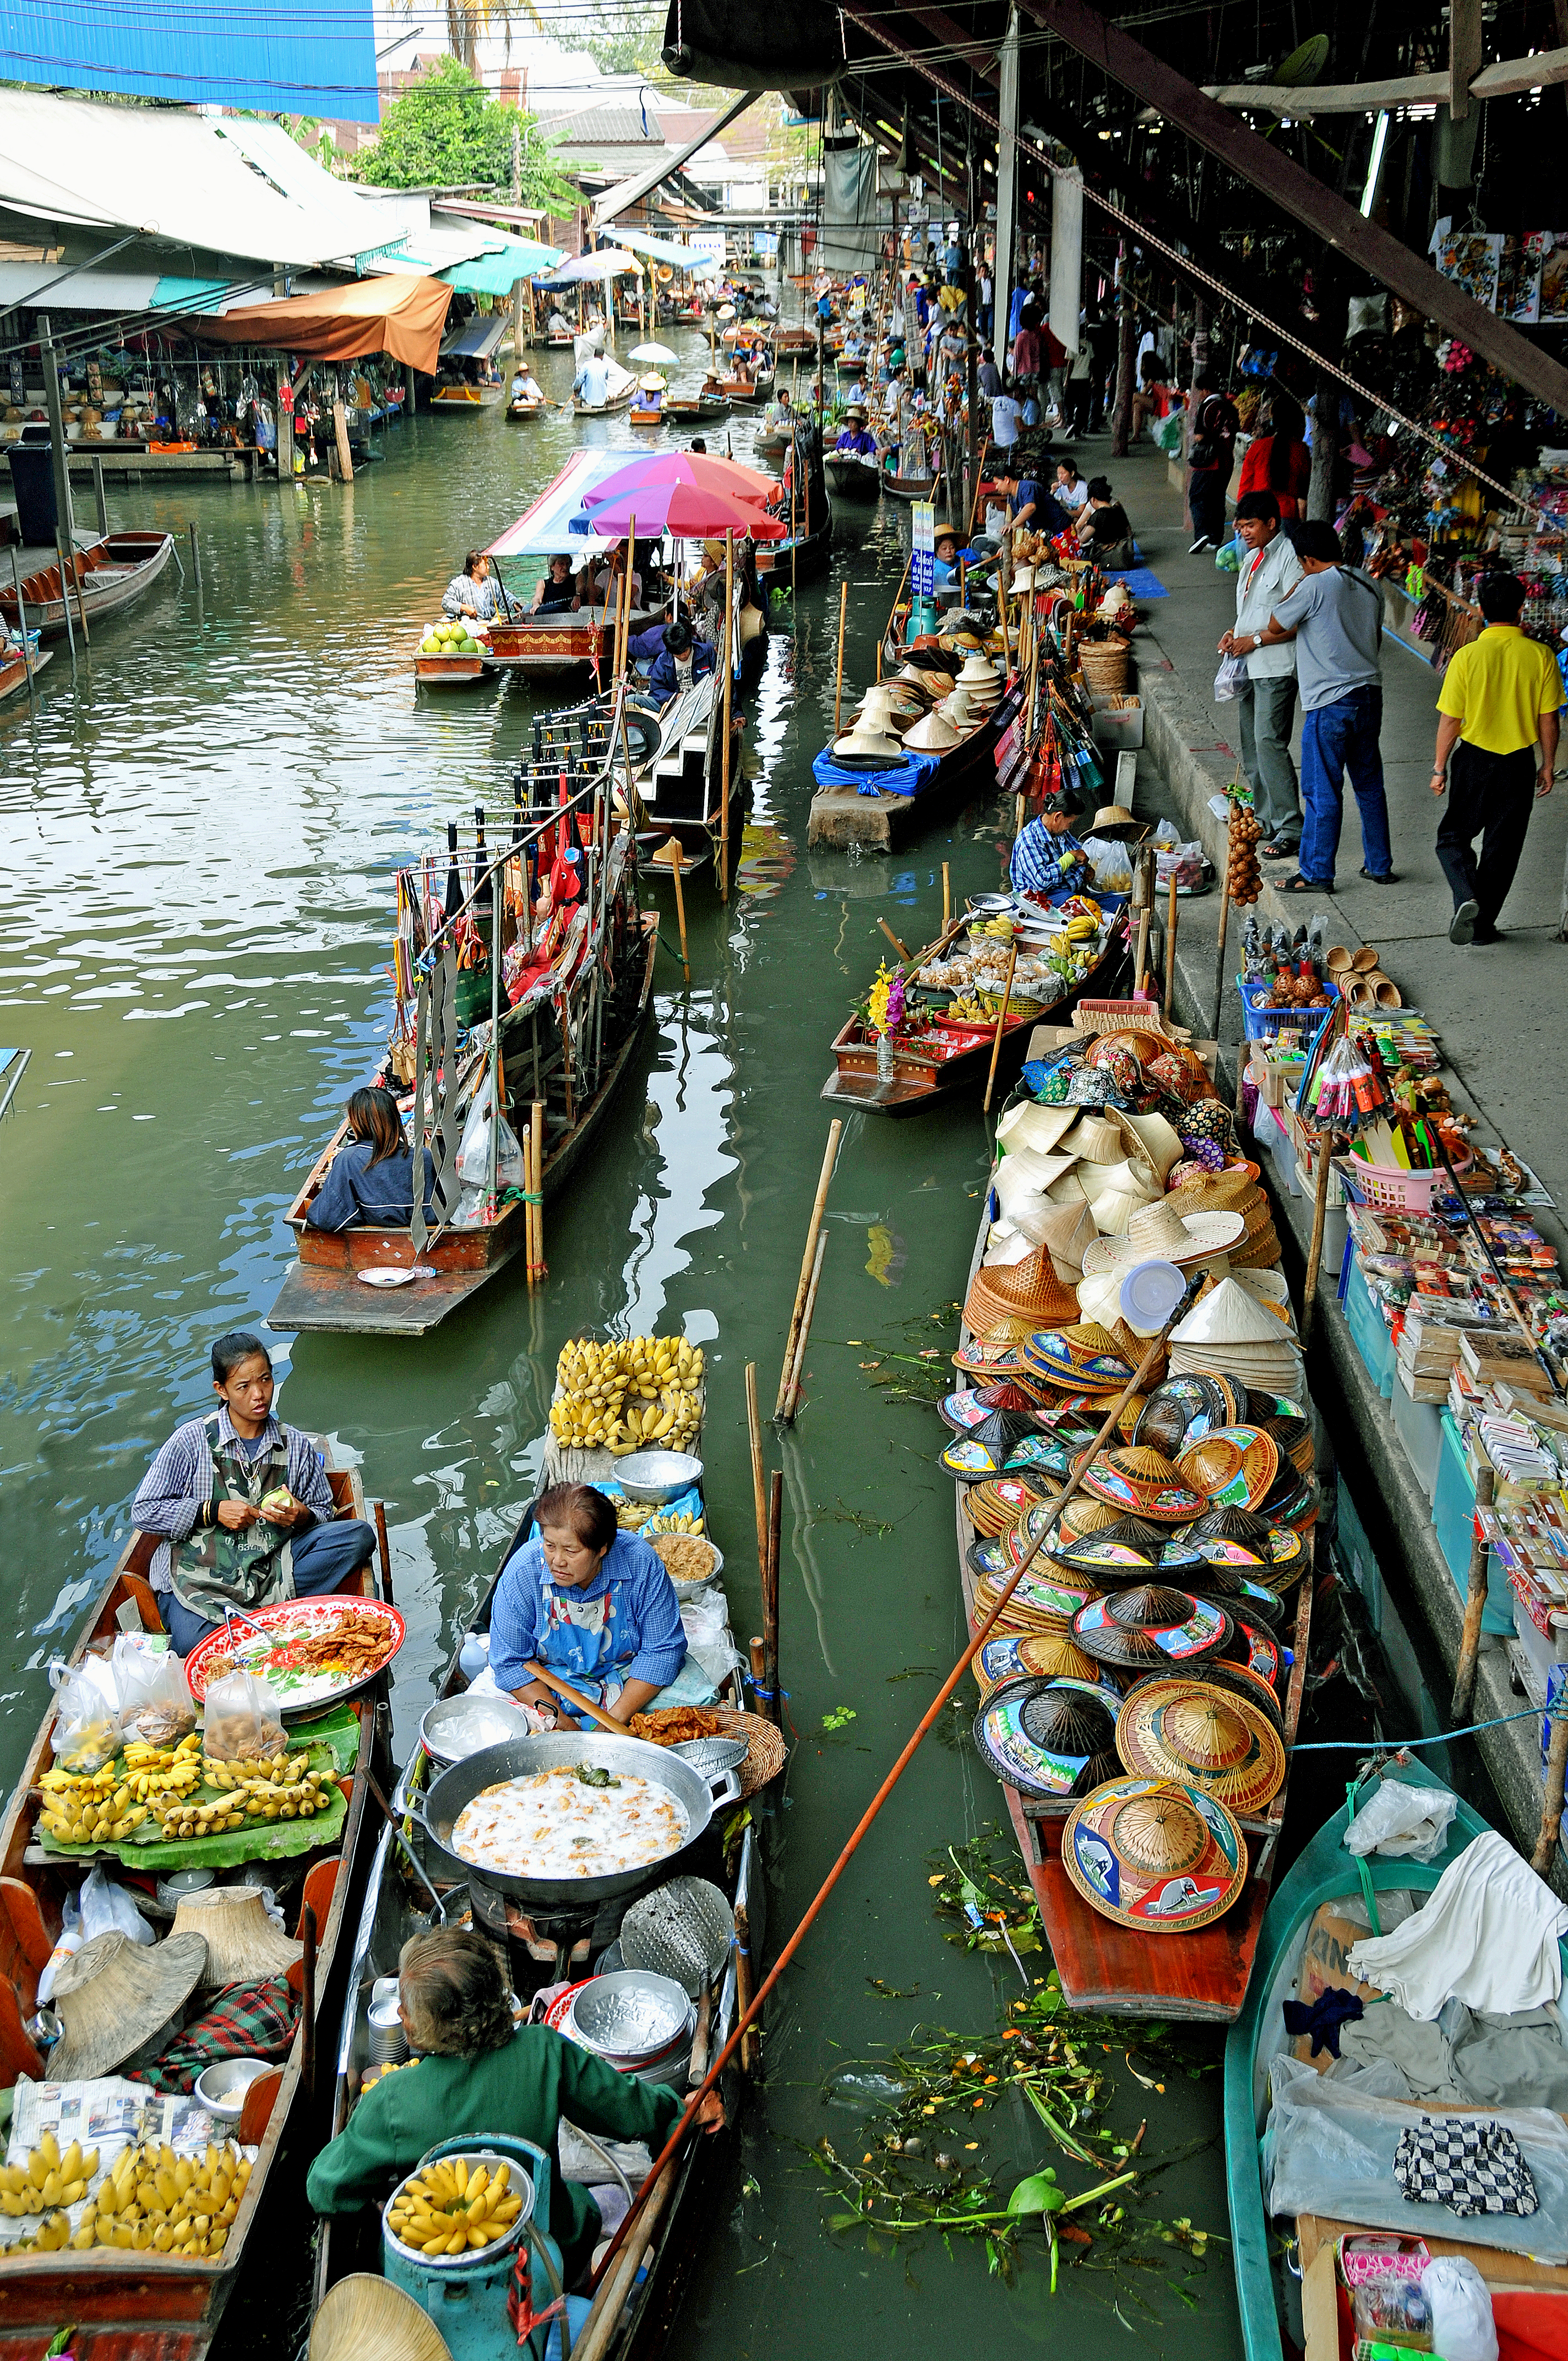 File:Damnoen Saduak floating market.jpg - Wikimedia Commons